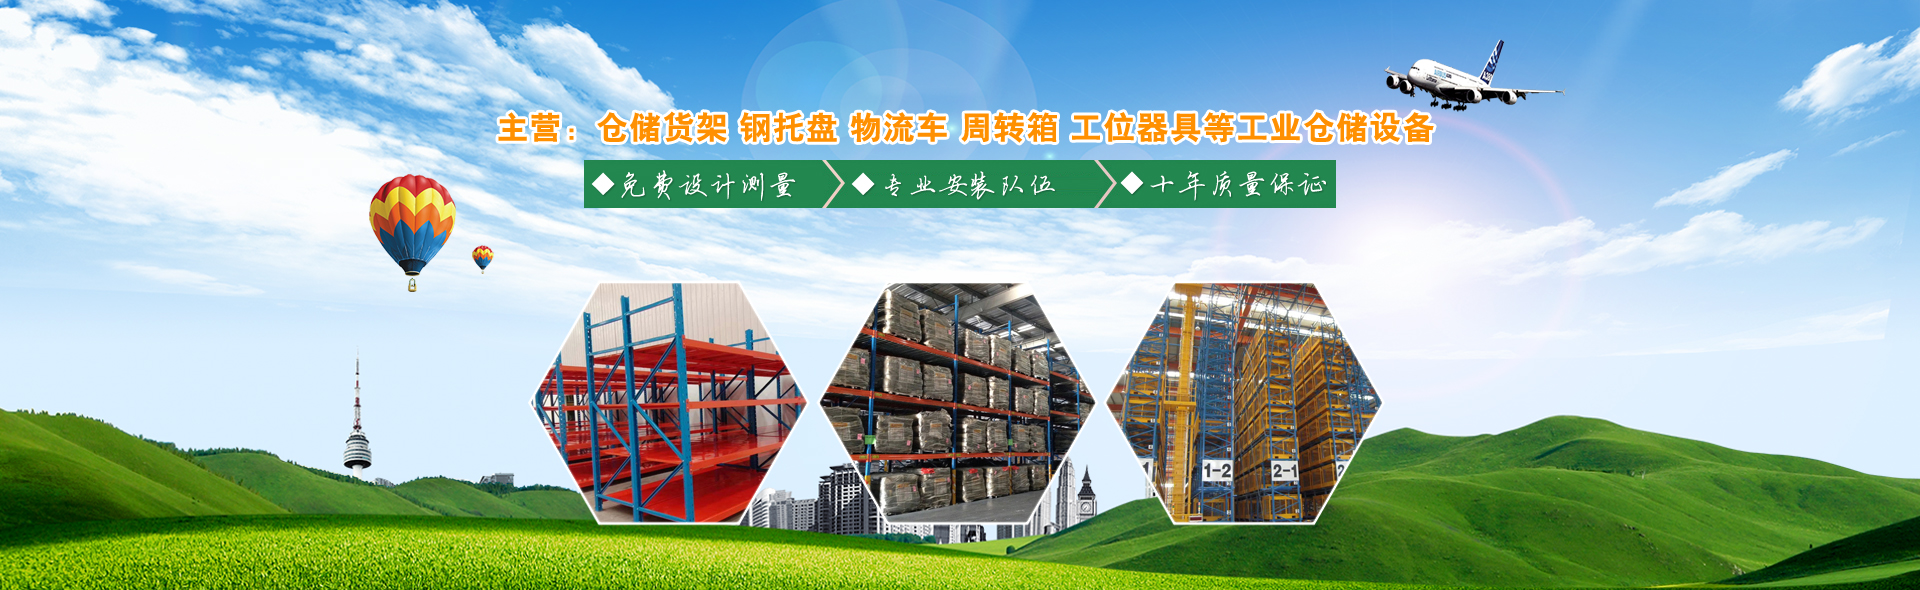 慶雲魯譽倉庫設備有限公司主要制造銷售各類工業倉儲設備